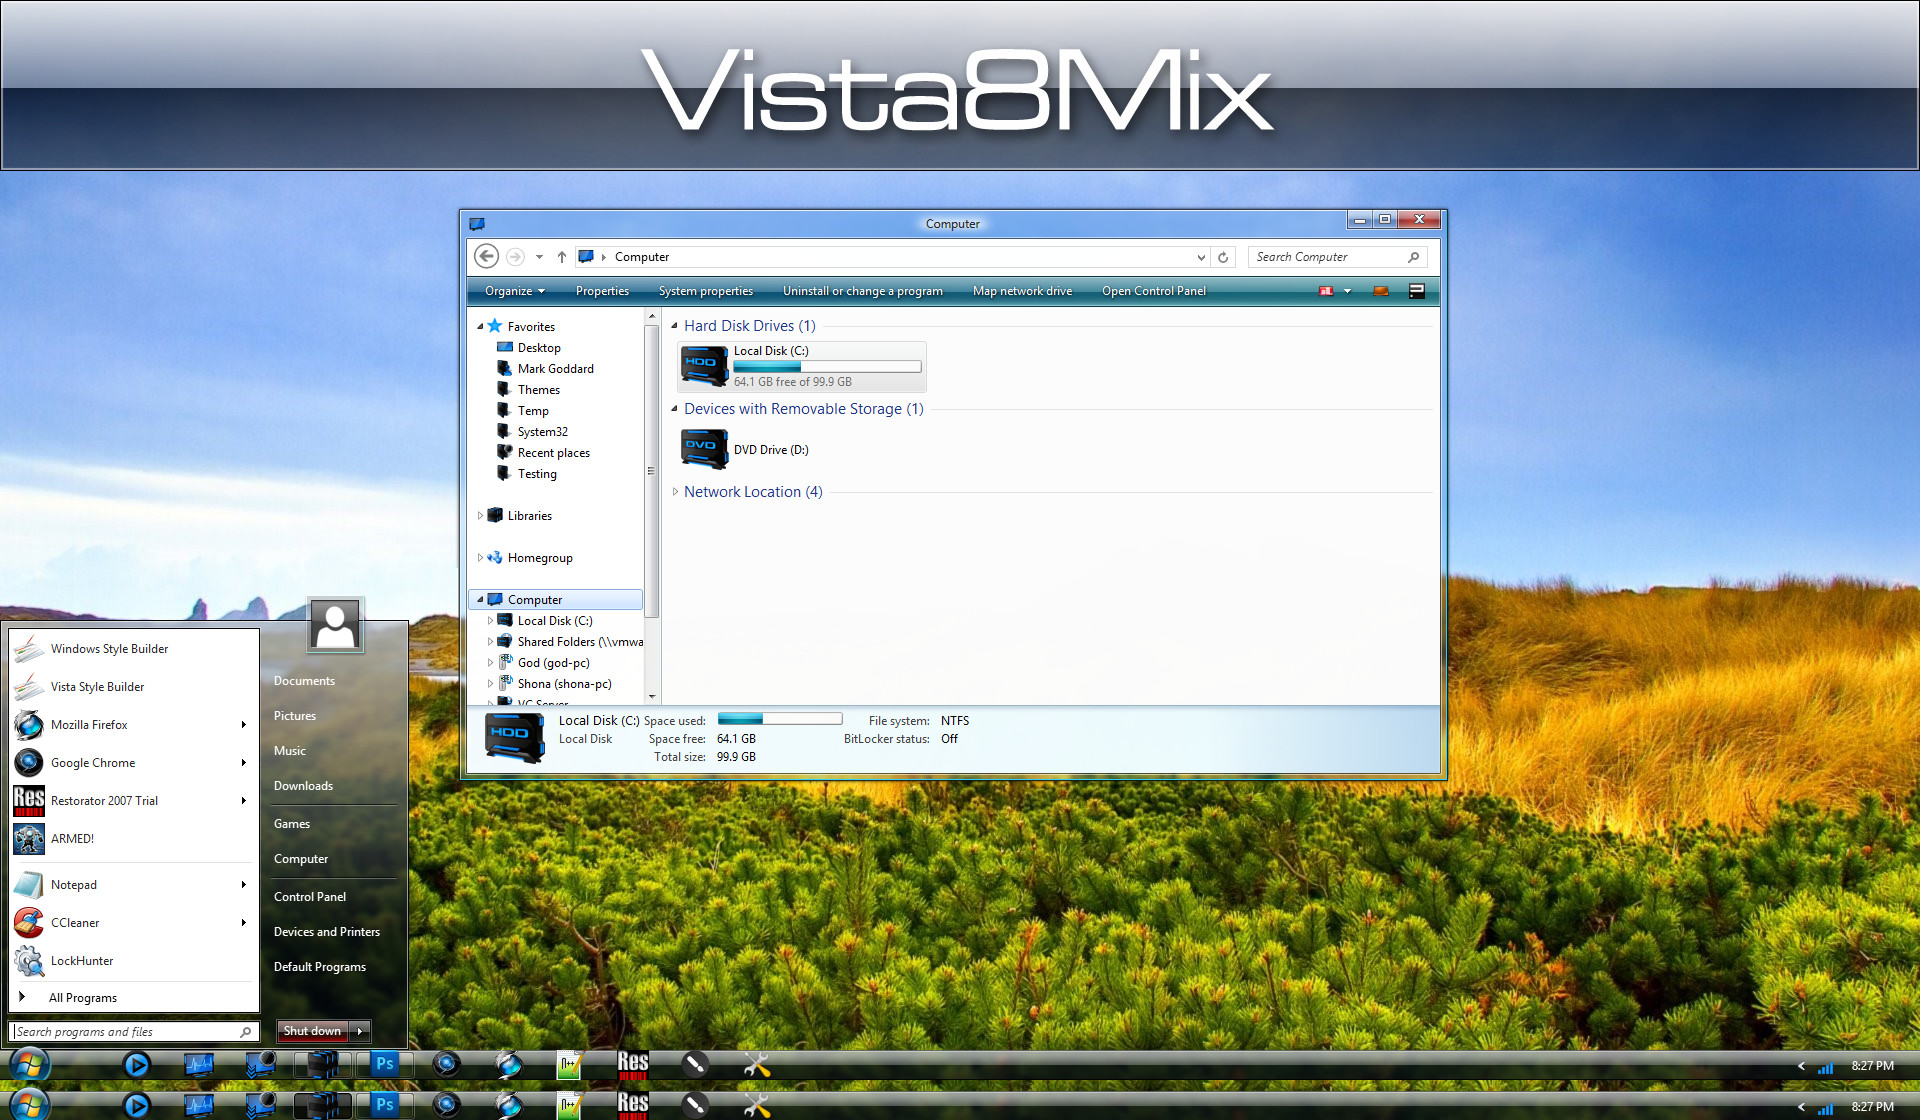 1920x1120 ... Vista 8 Modern Mix by MrGRiM01